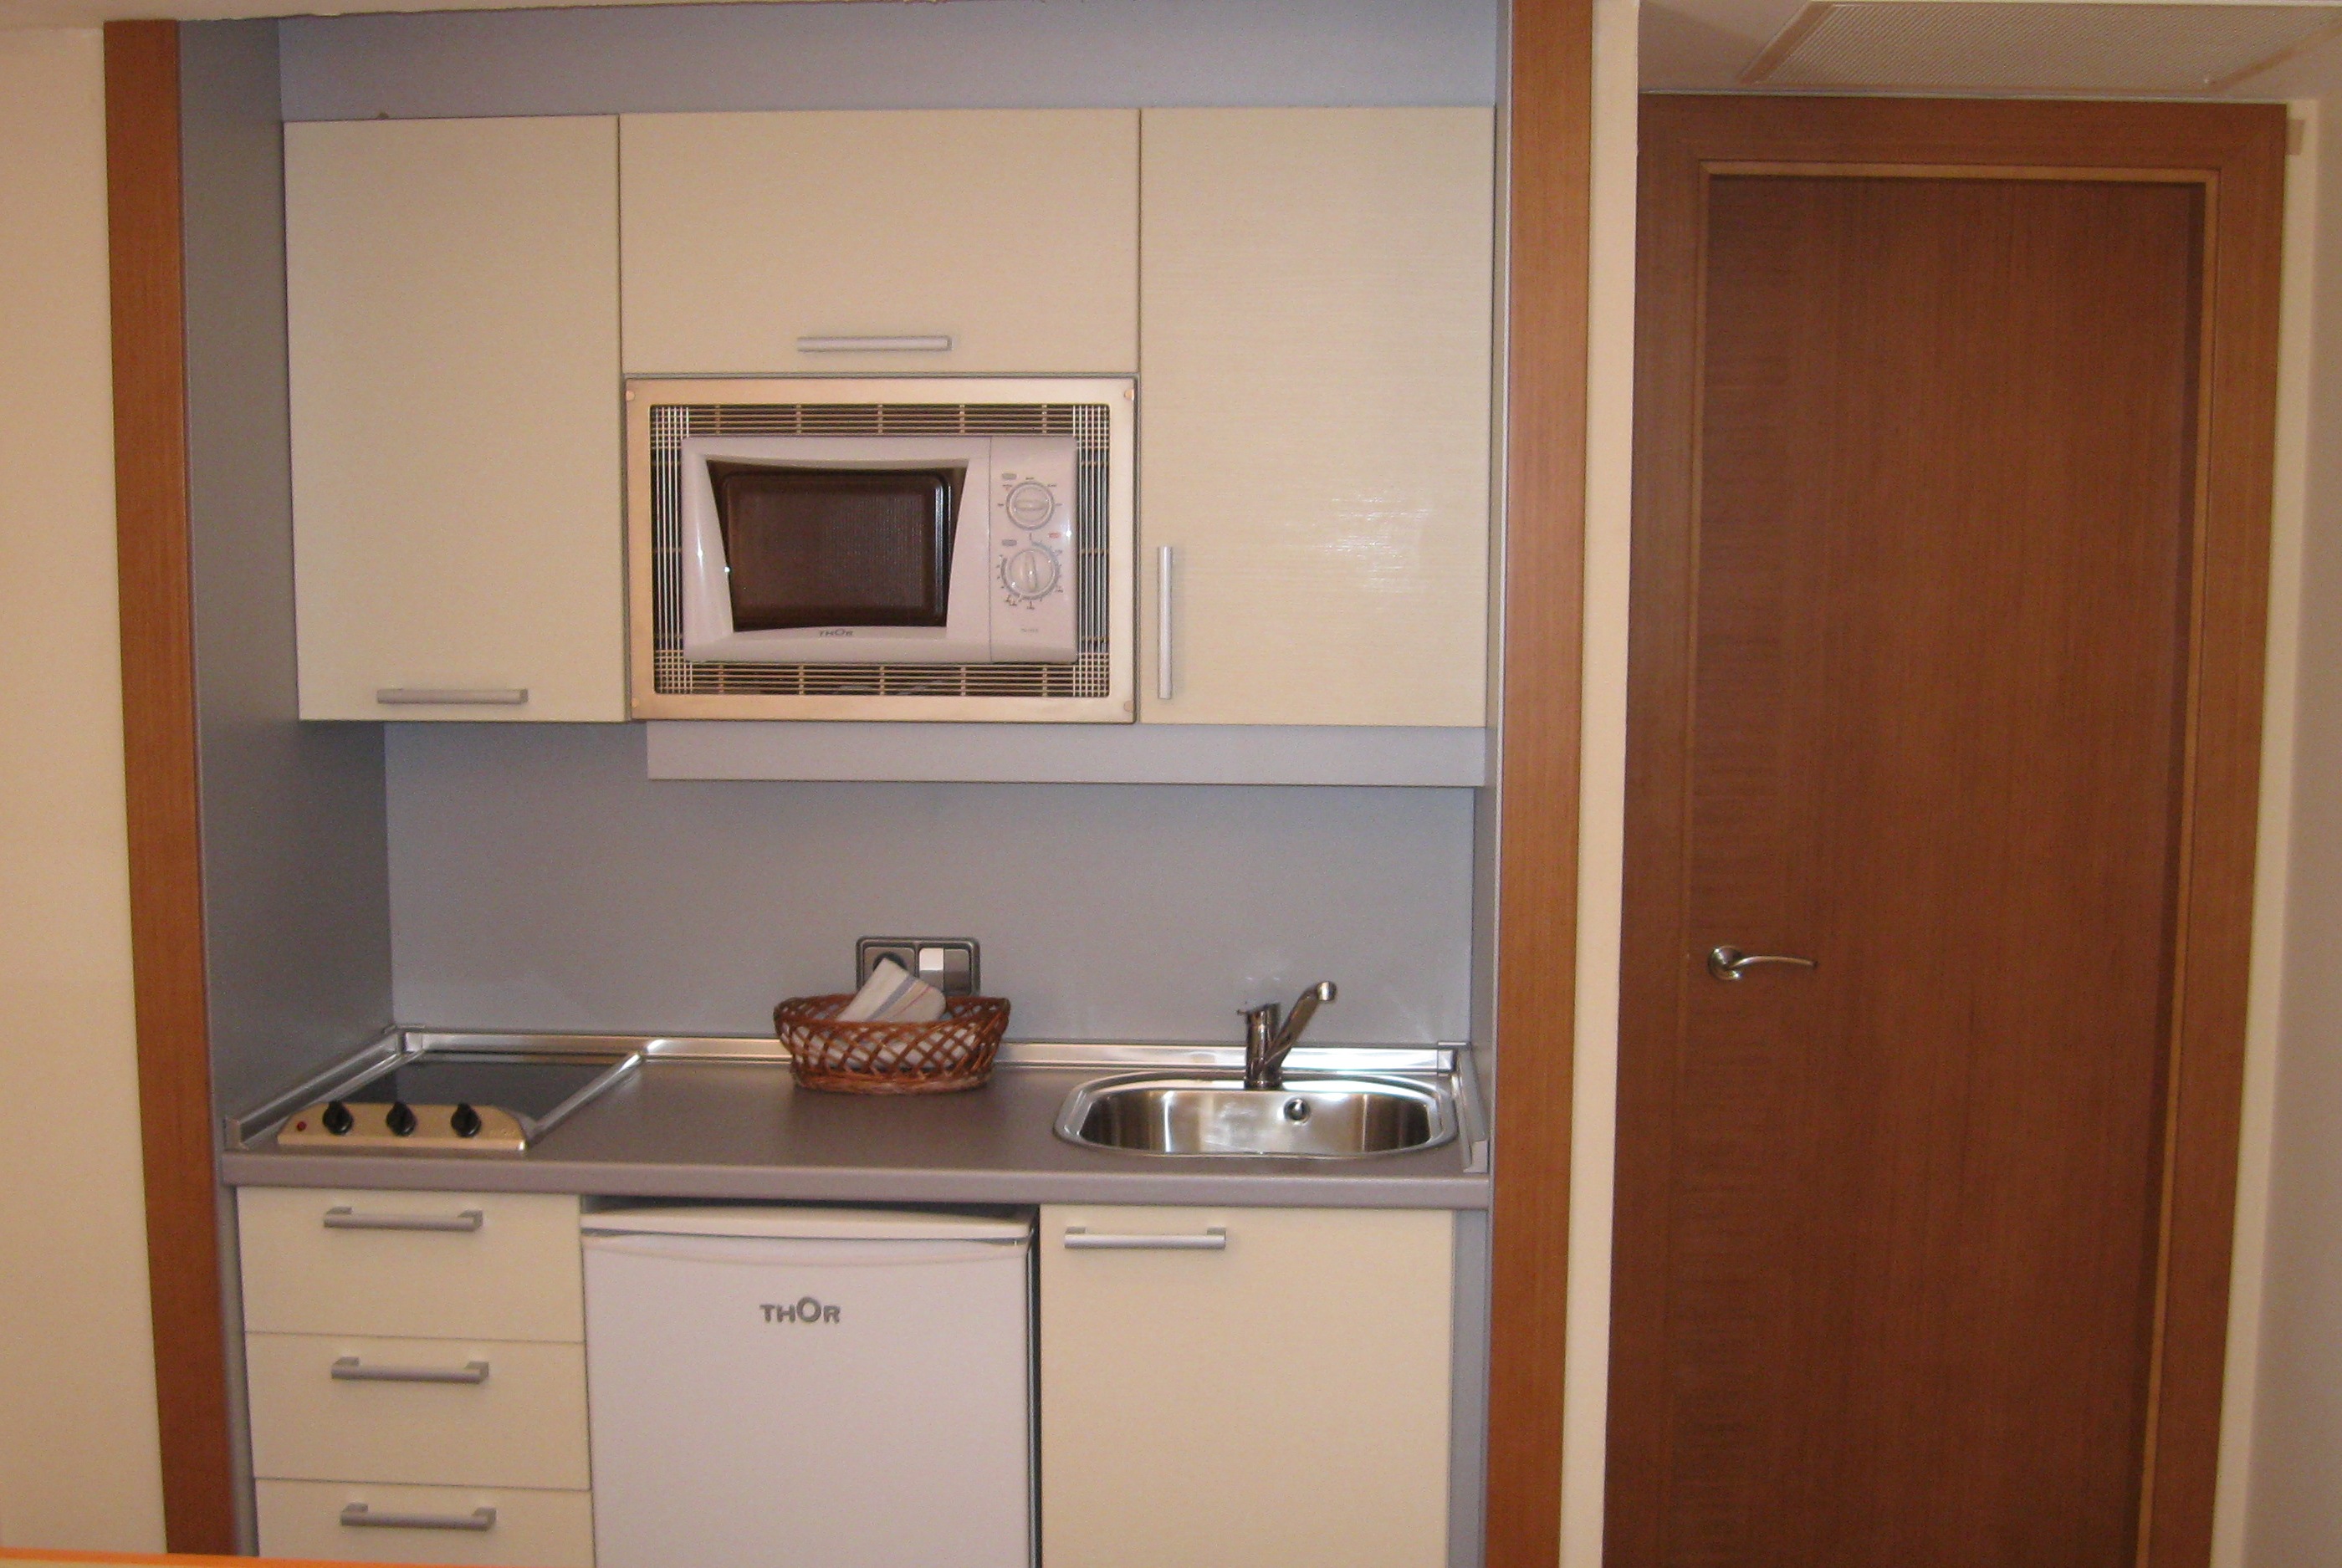 Une kitchenette est une petite cuisine aménagée dans un espace limité. © Batle Group, CC BY-SA 2.0, Flickr